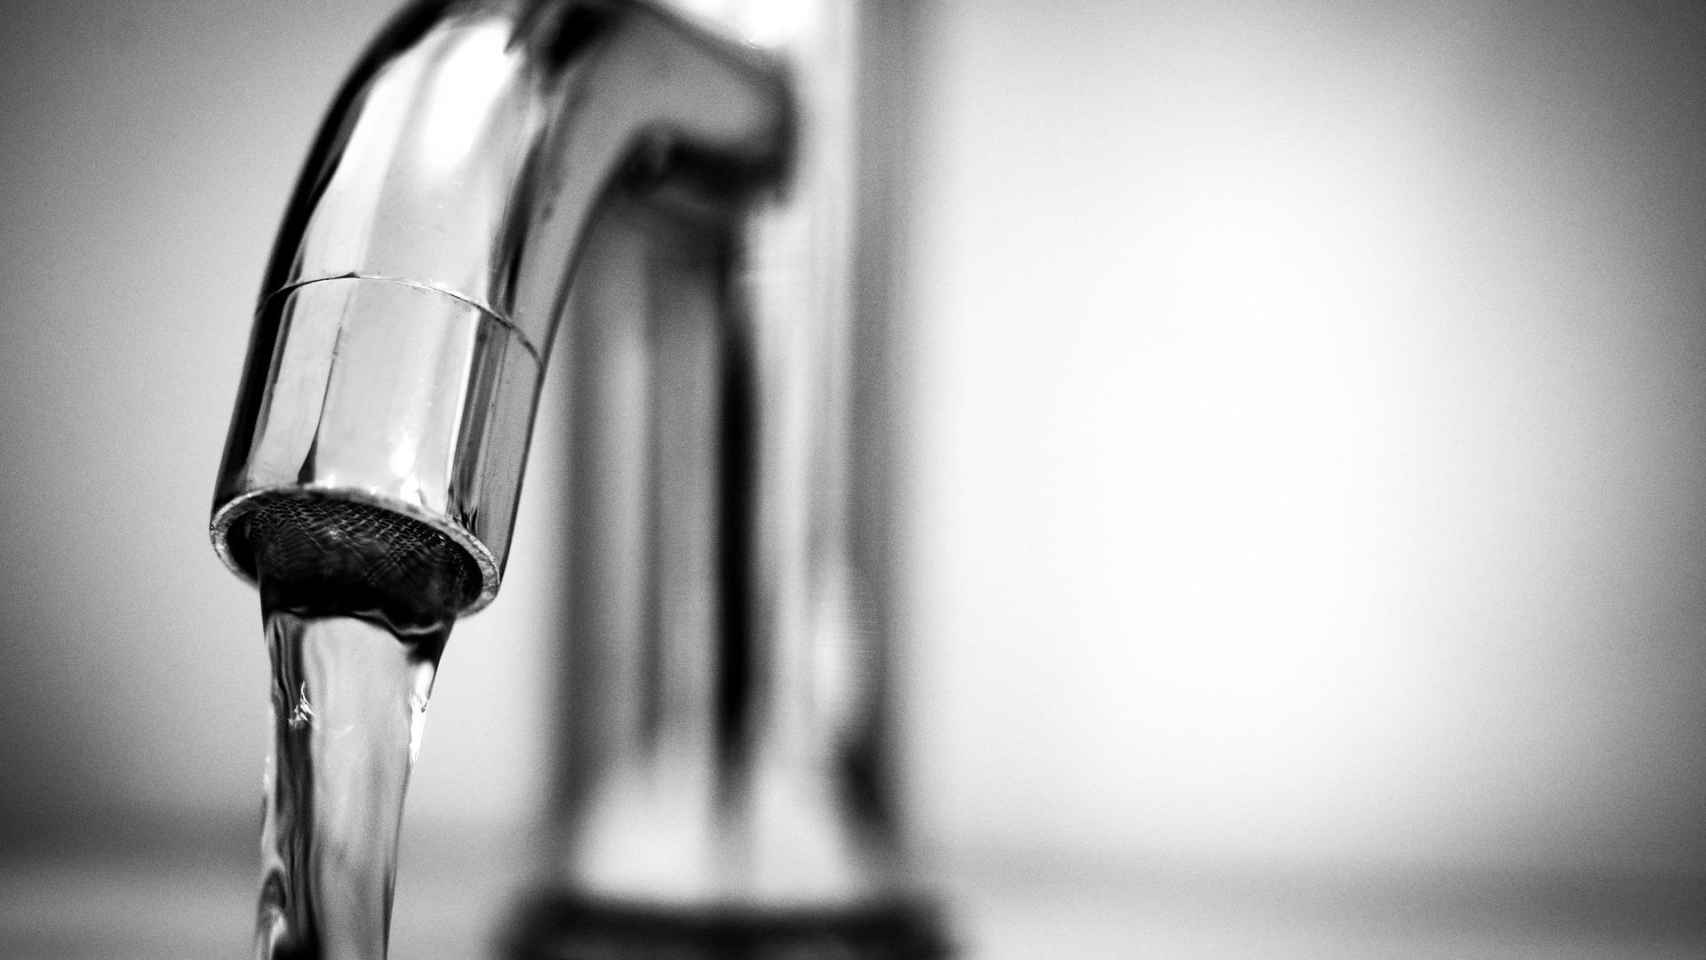 El sistema de ahorro de agua para hogares y negocios de Waisense supone un ahorro de entre 6 y 25 litros de agua cada vez que se usa el grifo de agua caliente.